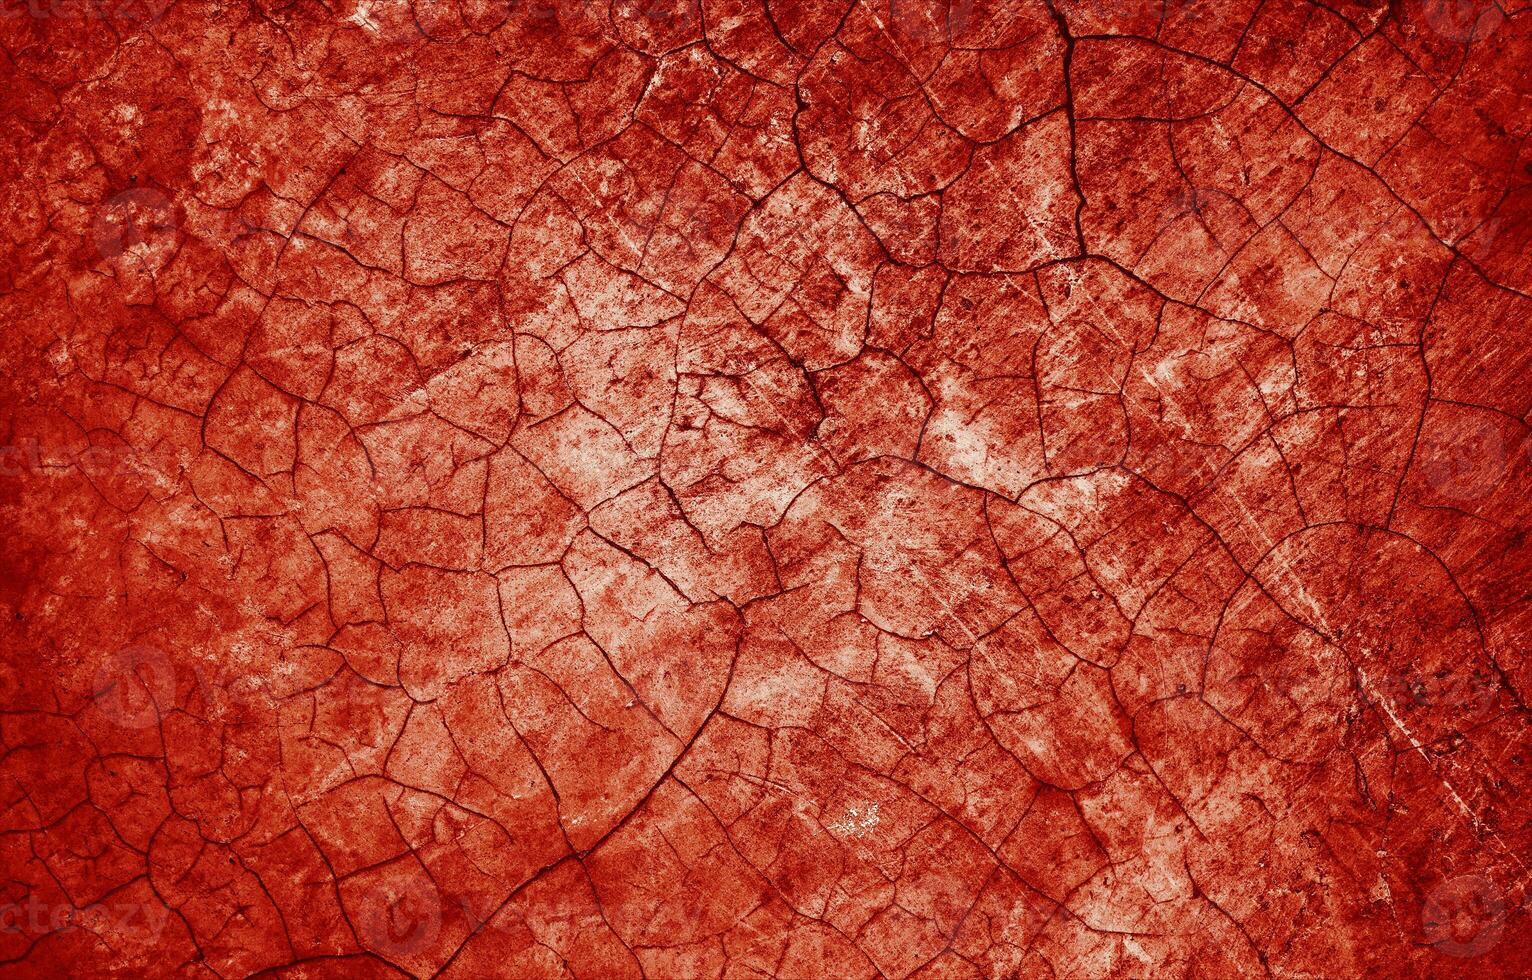 spetters van rood verf lijken op vers bloed, hun gekarteld randen bijdragende naar een zin van onbehagen. de vlekken, doet denken aan van halloween verschrikkingen. foto